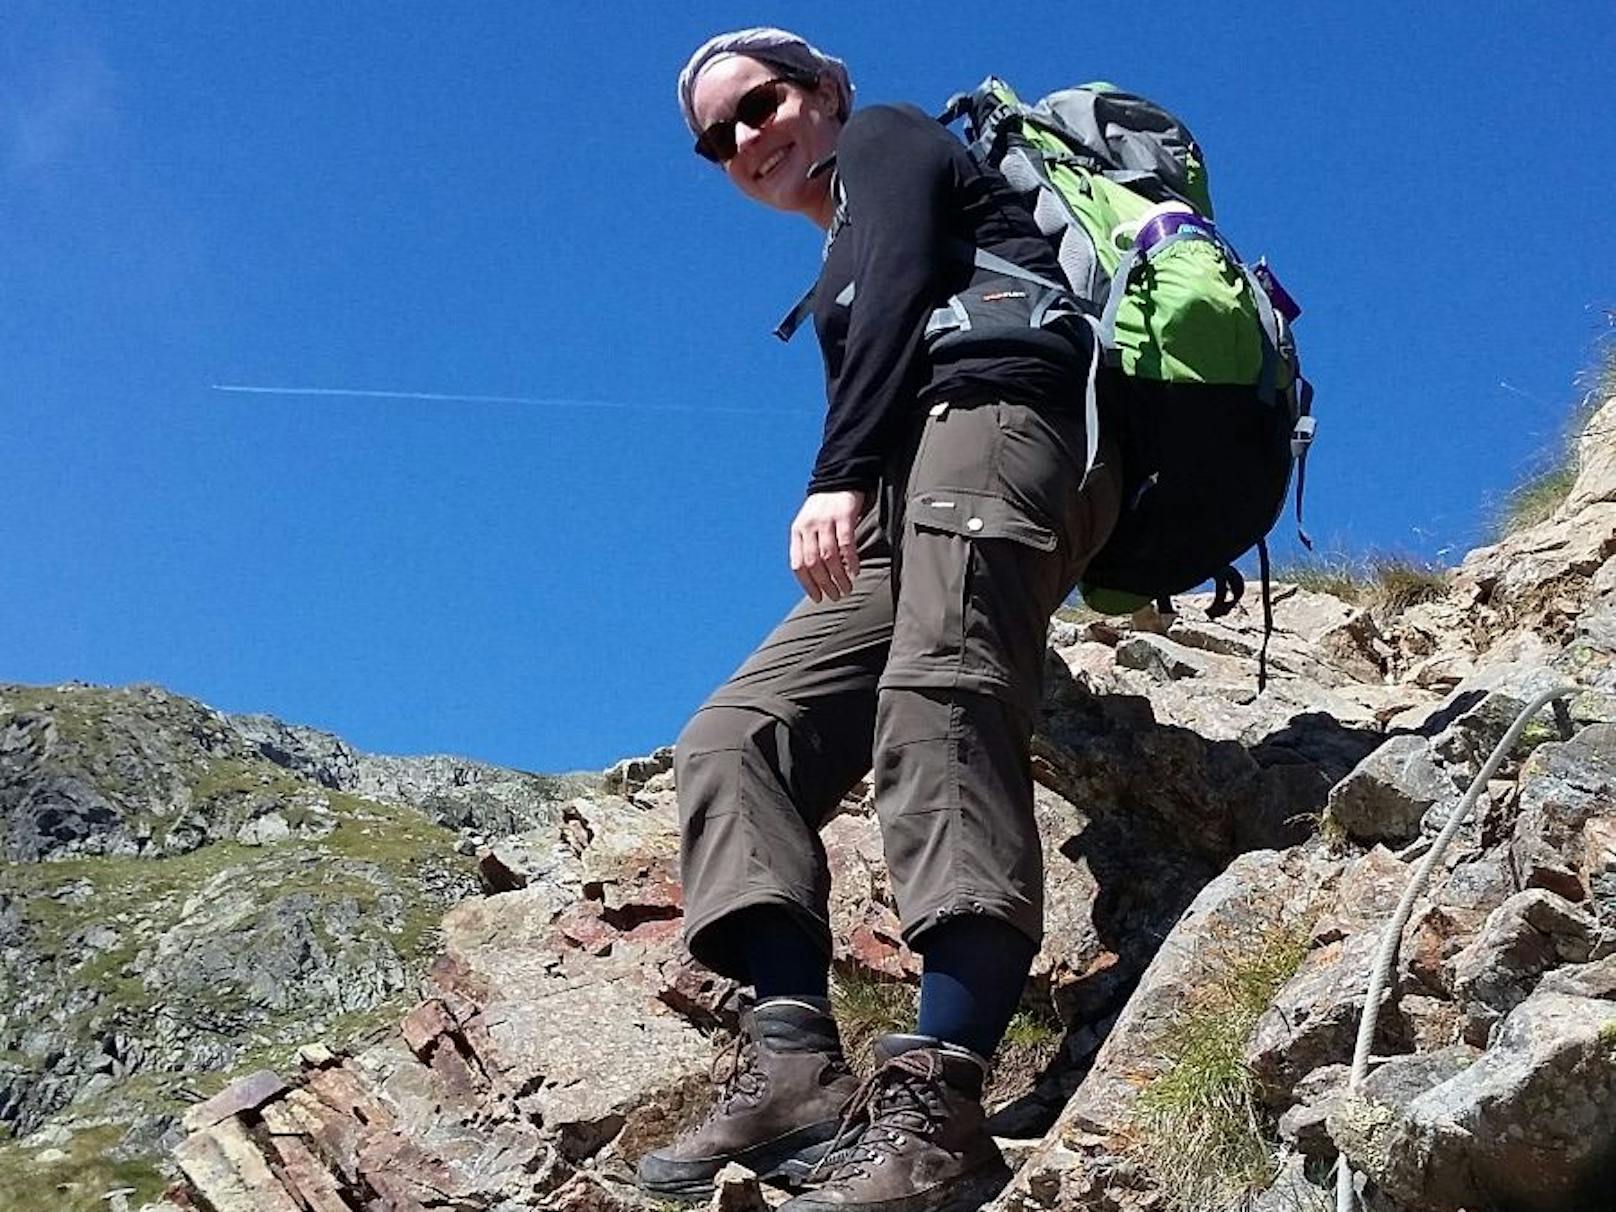 Bevor Sarah K. am chronischen Fatigue-Syndrom erkrankte, war sie sportlich unterwegs: "Ich bin gerne wandern gegangen."